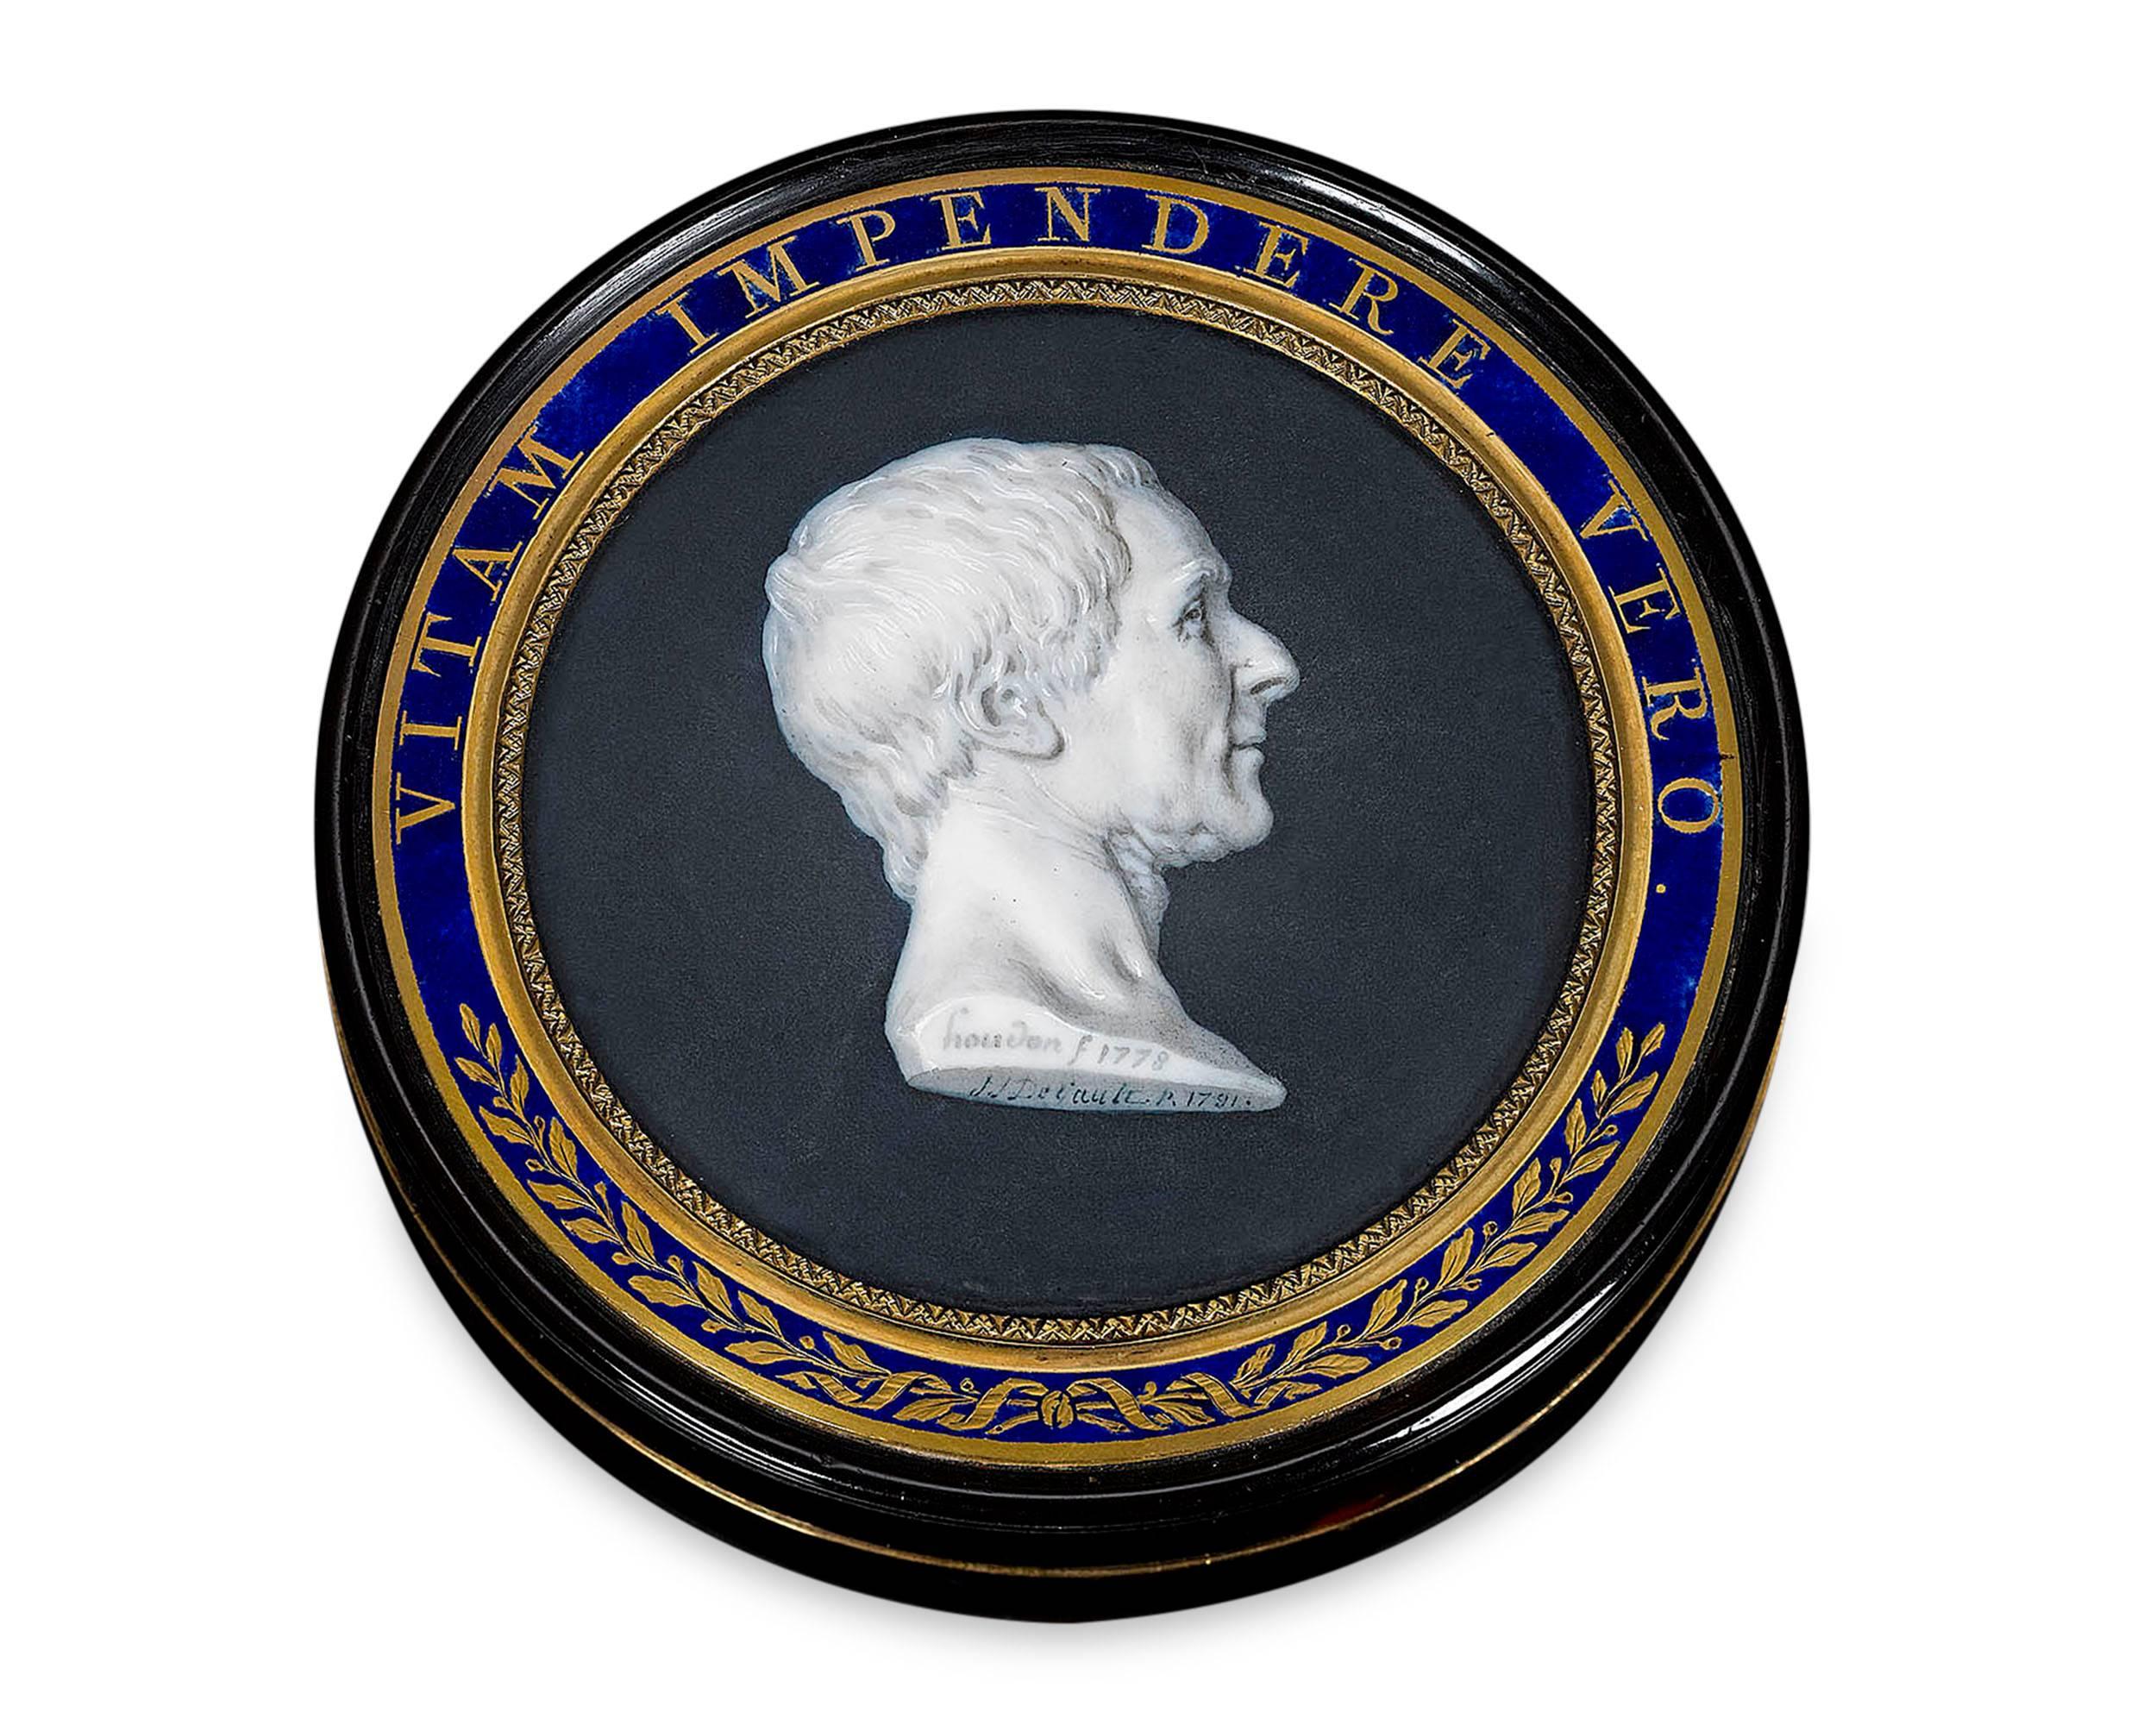 Une exquise miniature du philosophe français Charles Montesquieu orne le couvercle de cette tabatière doublée d'écaille. Ce beau portrait a été réalisé par le célèbre Français Jacques-Joseph de Gault d'après un buste populaire du sculpteur